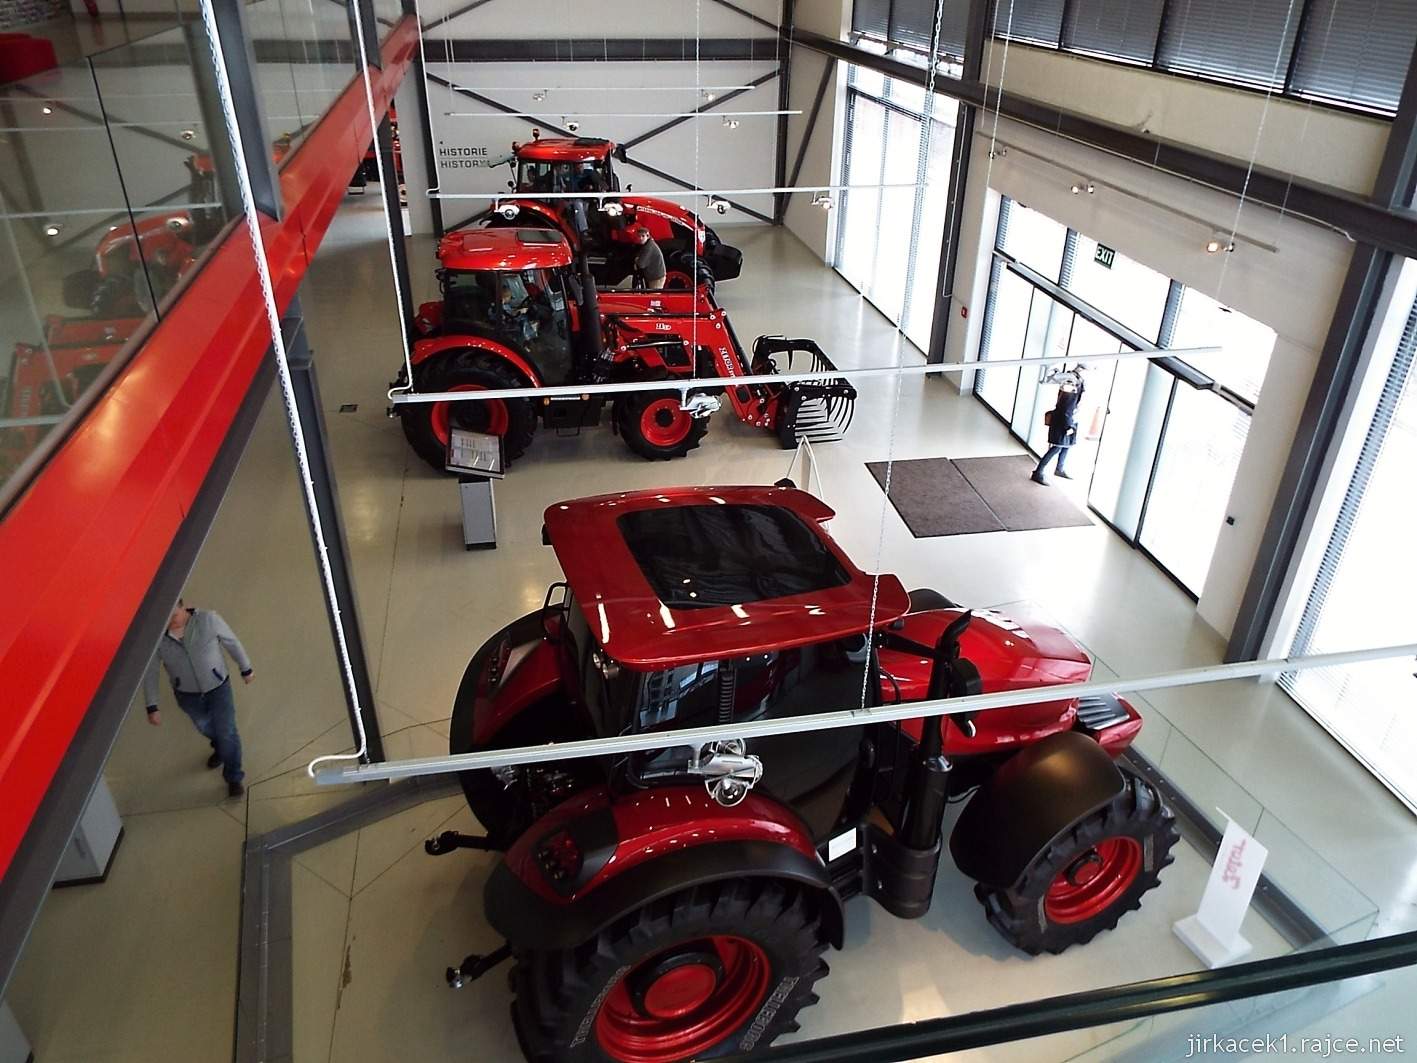 A - Brno - Zetor Gallery 08 - celkový pohled na expozici moderních traktorů